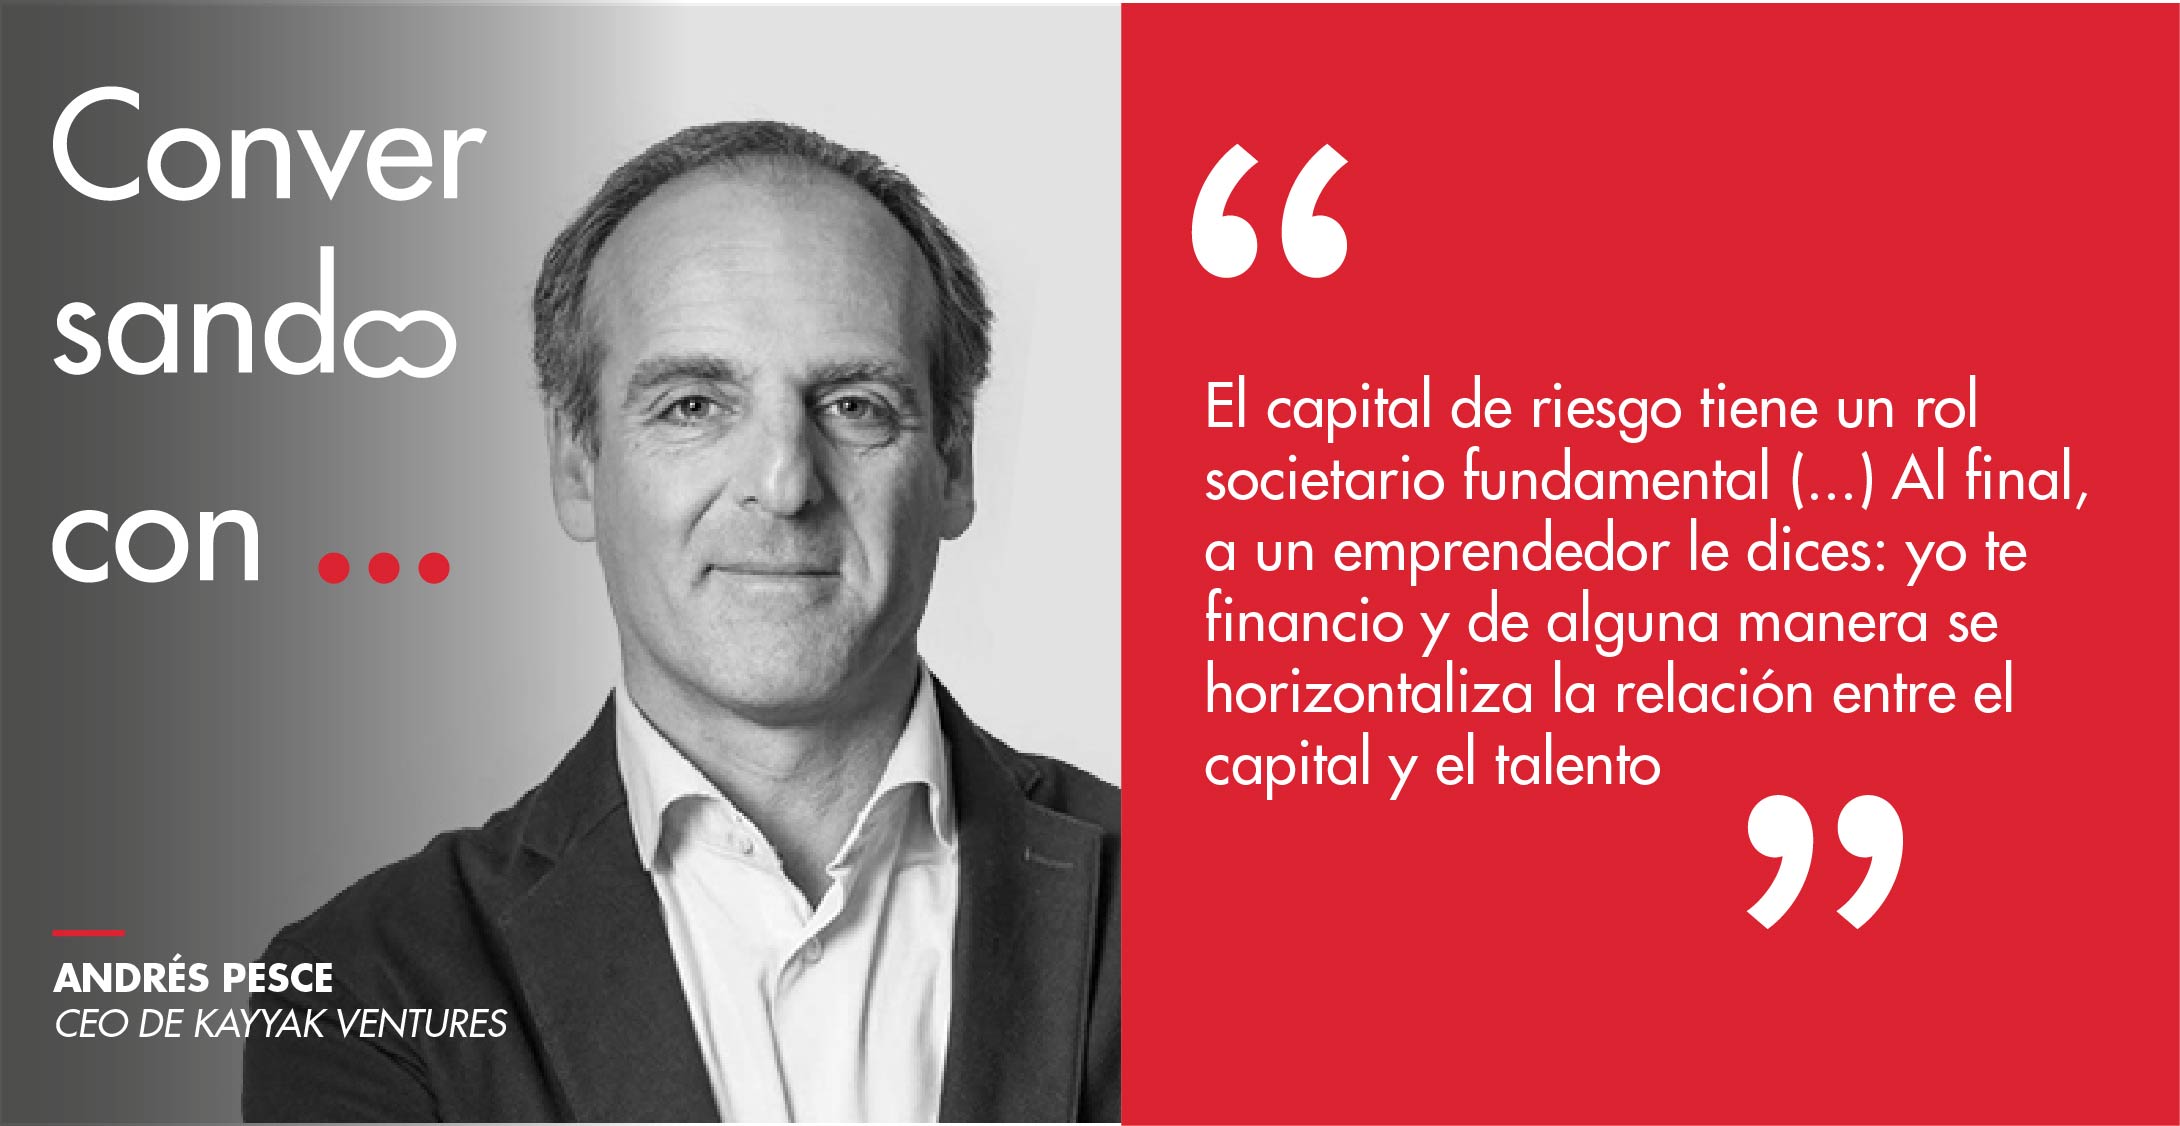 Andrés Pesce, CEO de Kayyak Ventures: “El capital de riesgo tiene un rol societario fundamental (…) Al final, a un emprendedor le dices: yo te financio y de alguna manera se horizontaliza la relación entre el capital y el talento”